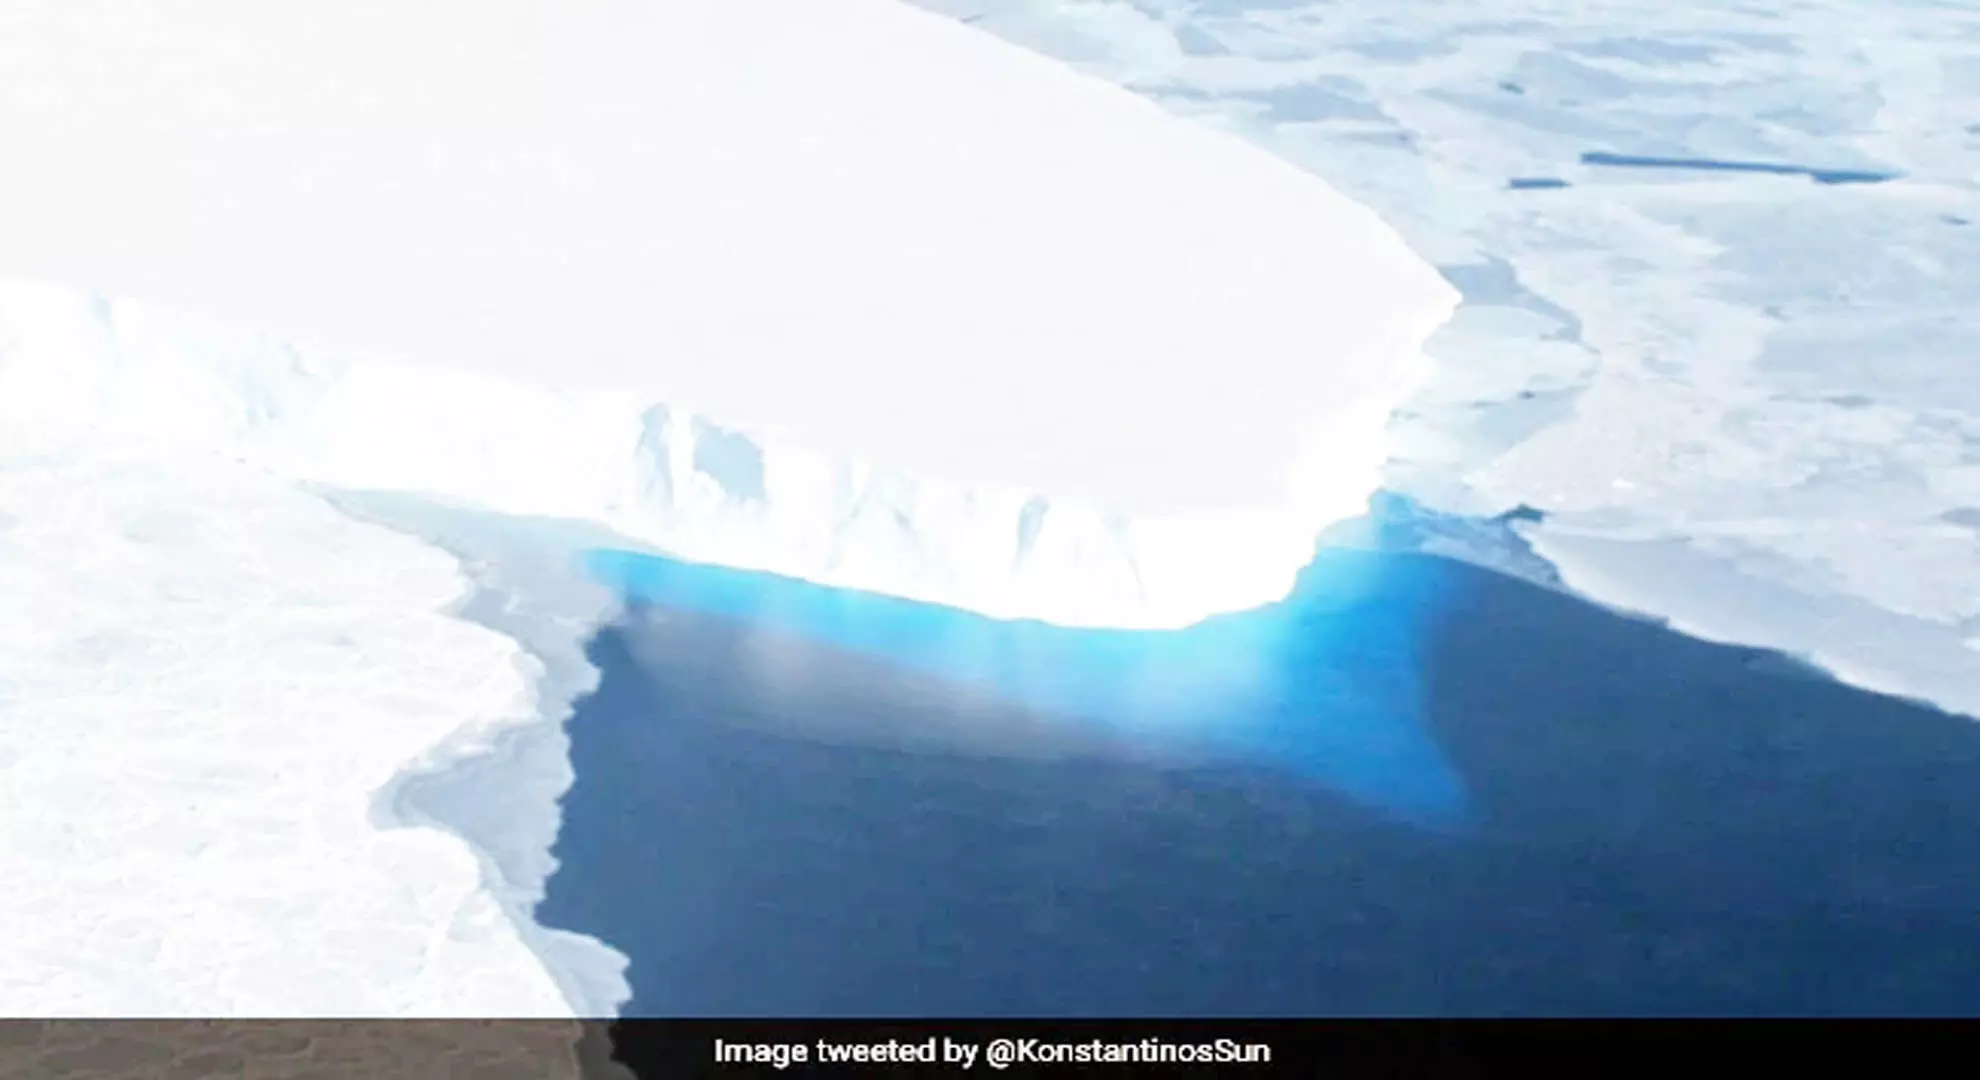 वैज्ञानिकों ने पता लगाया कि अंटार्कटिका का डूम्सडे ग्लेशियर कब और क्यों पिघलना शुरू हुआ